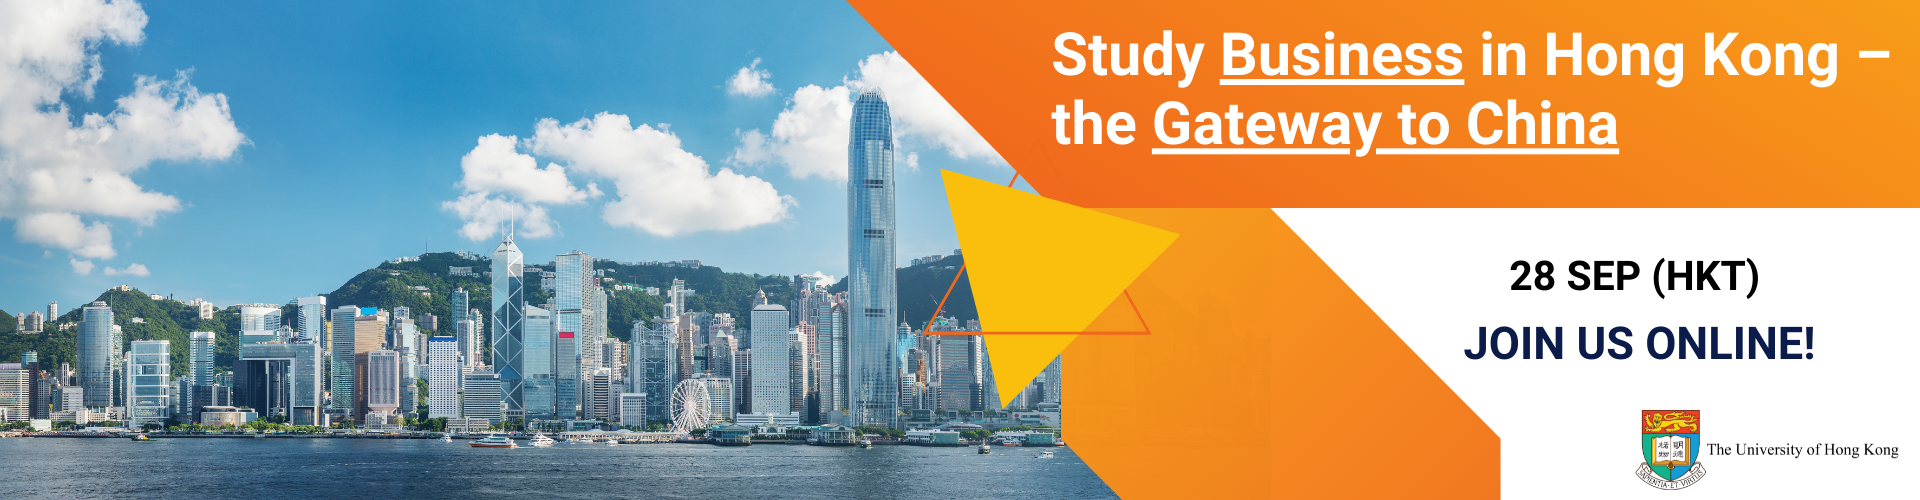 動畫文本"Study Business in Hong Kong - the Gateway to China Join Us On 28 September" with photos of Hong Kong harbour